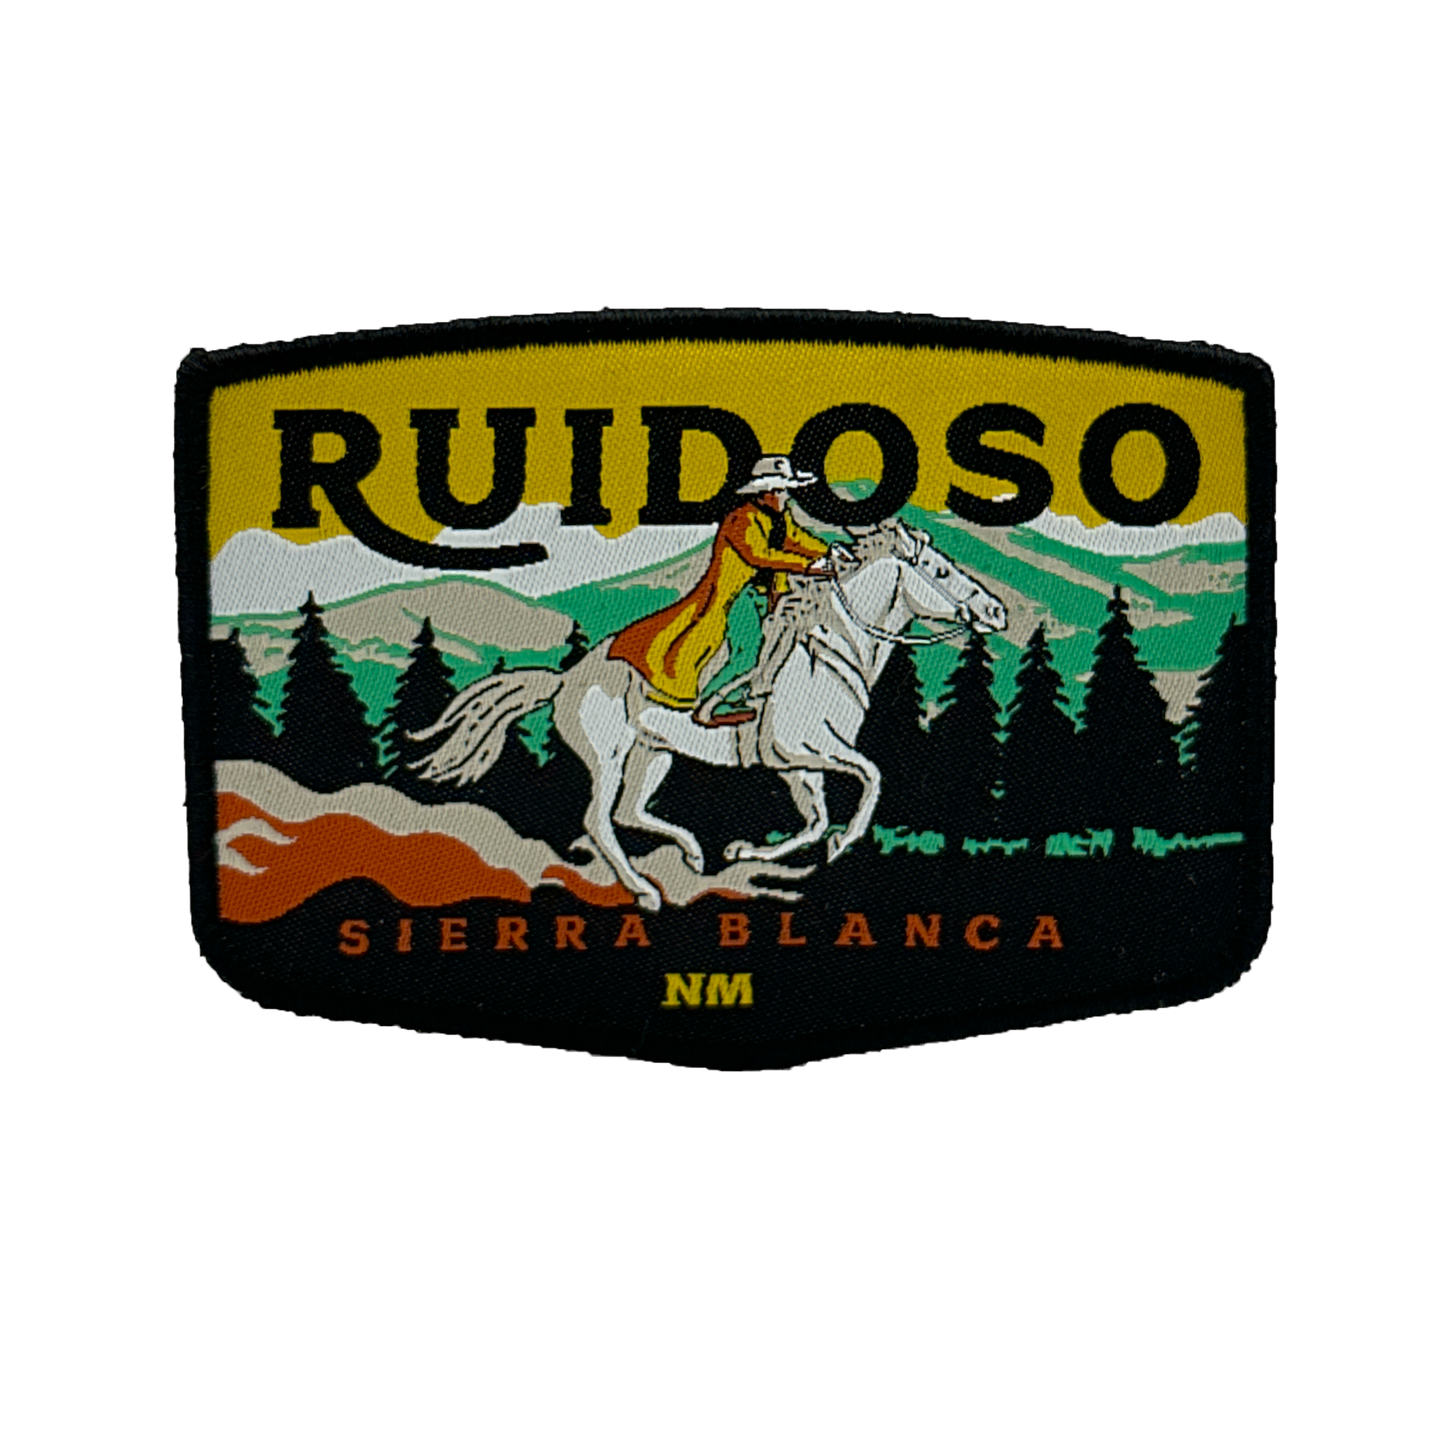 Ruidoso, NM - Rider Edition Patch